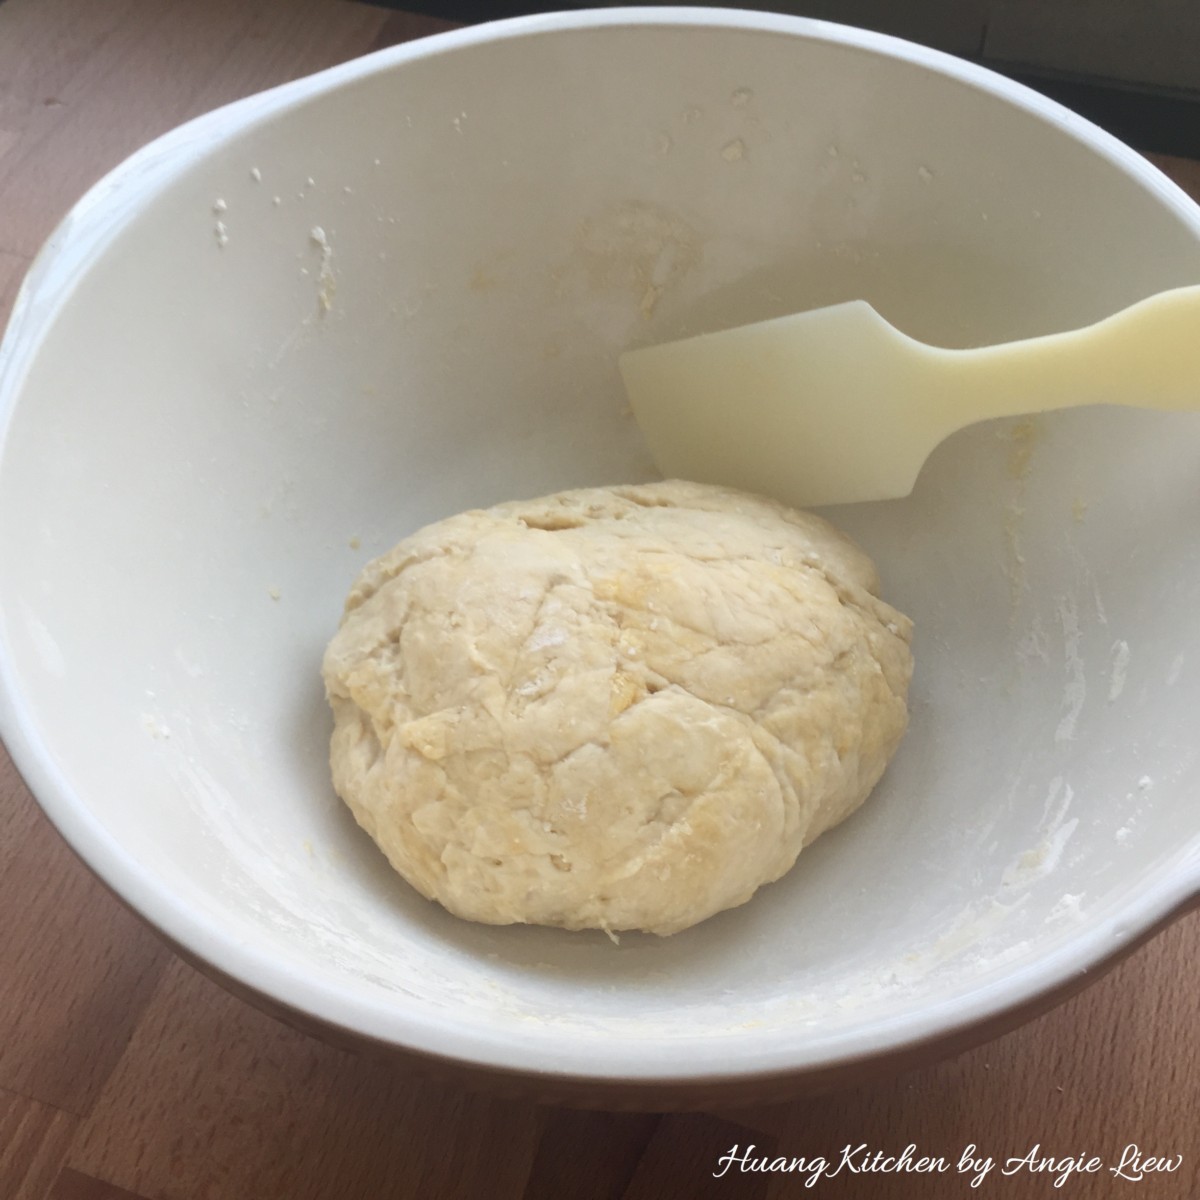 Spiral Curry Puffs recipe - knead until smooth